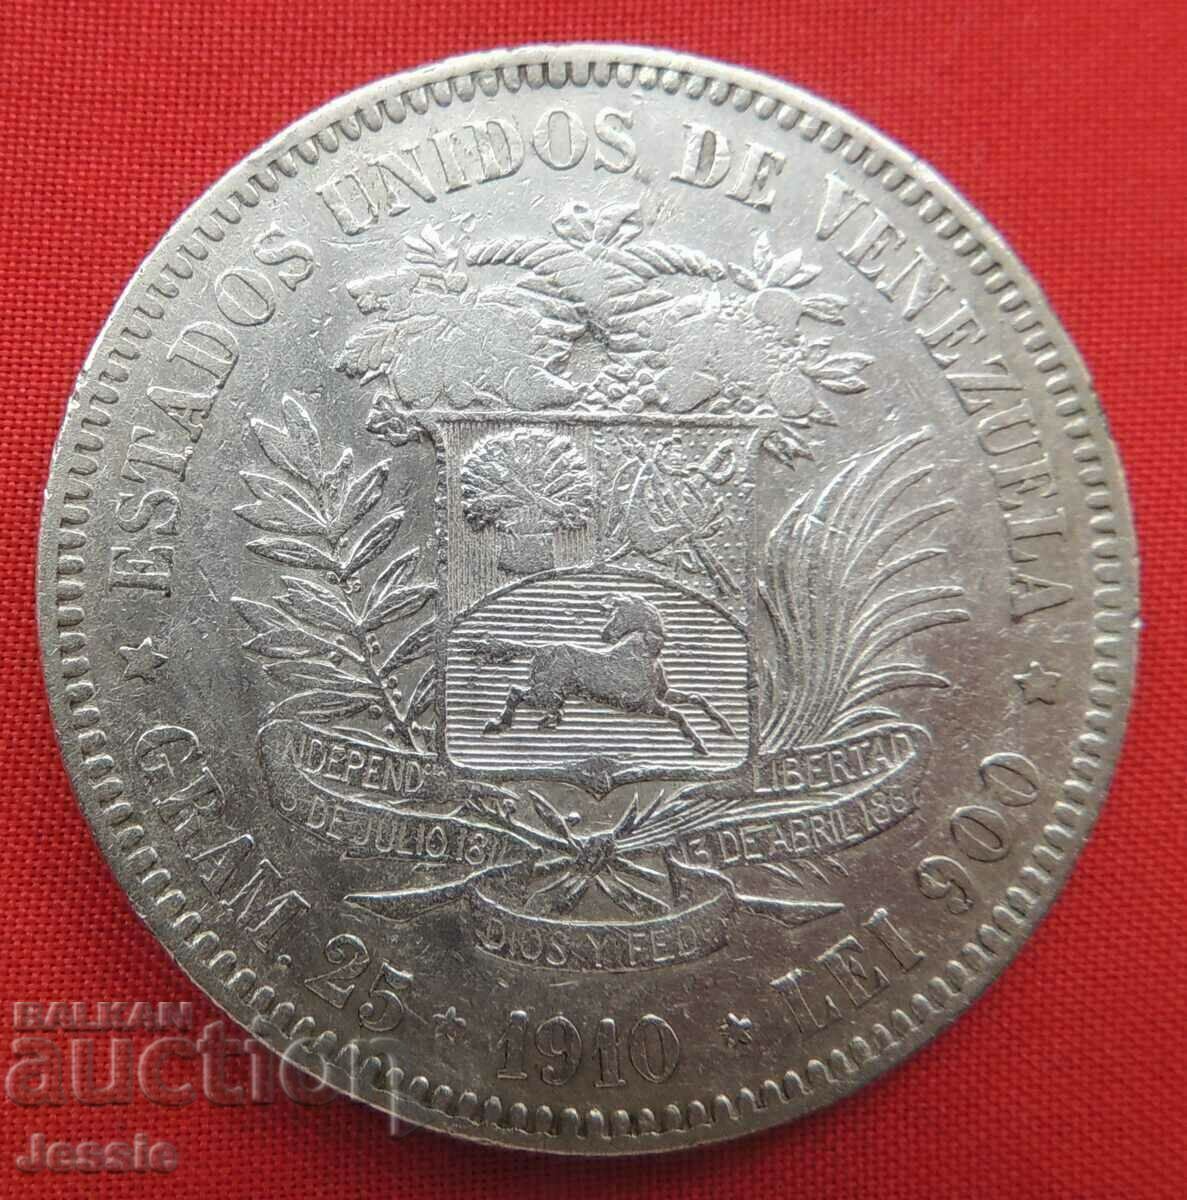 5 Bolivar 1910 silver Venezuela NO MADE IN CHINA !